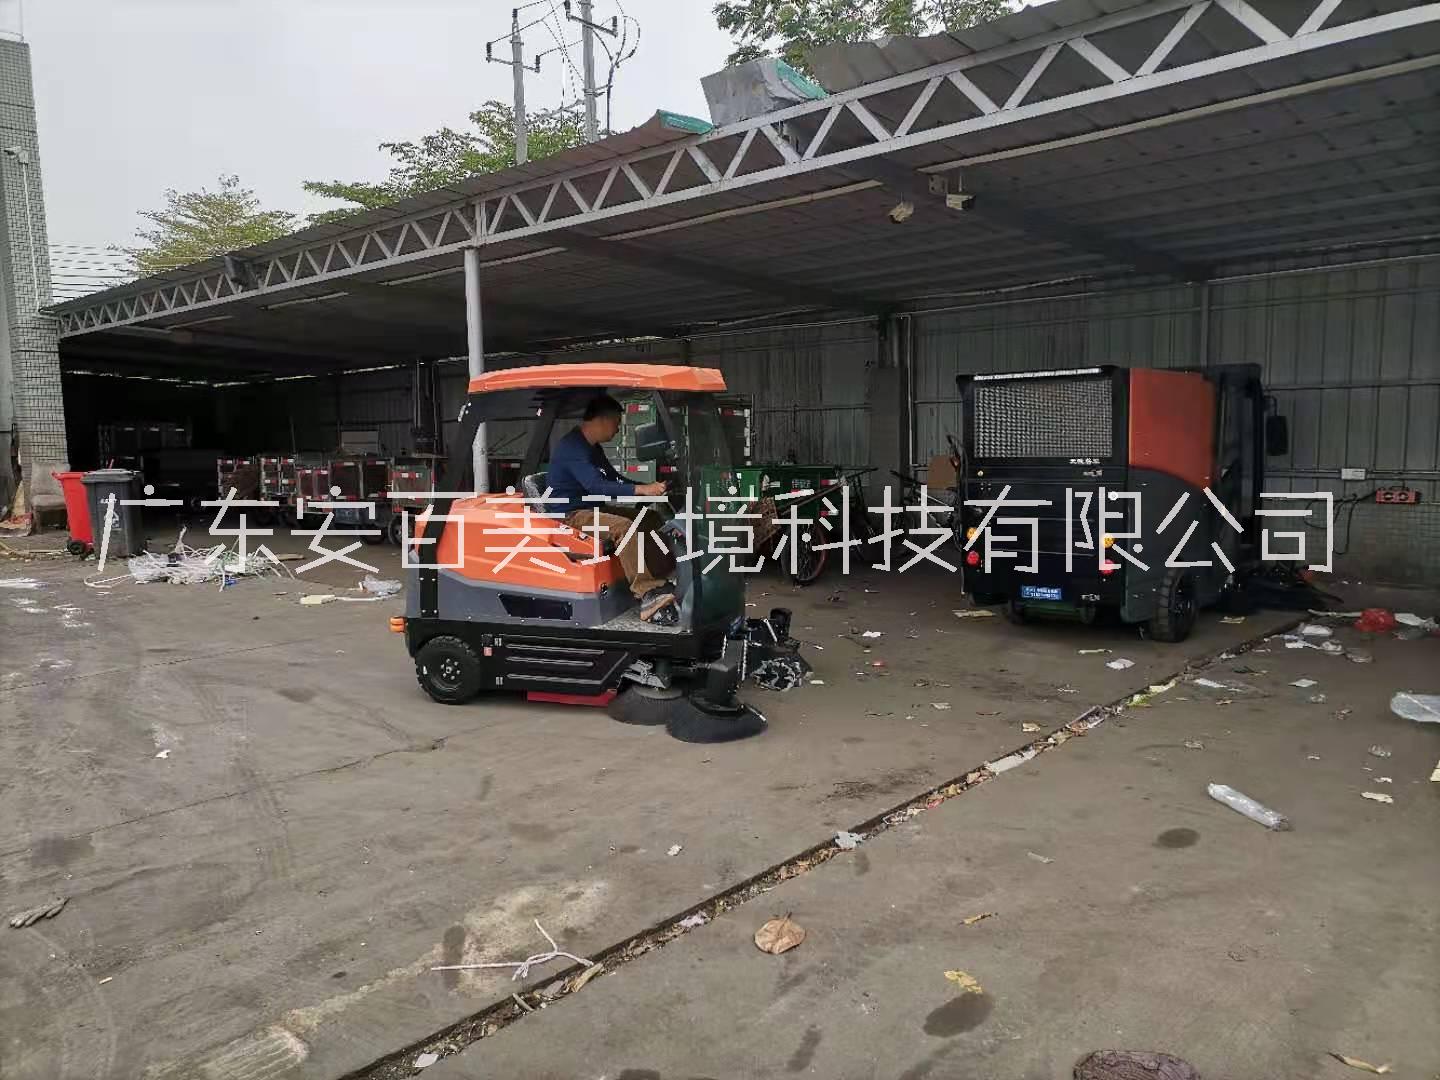 工业吸尘电动驾驶式扫地机 惠州吸尘扫地机 扫地机厂家